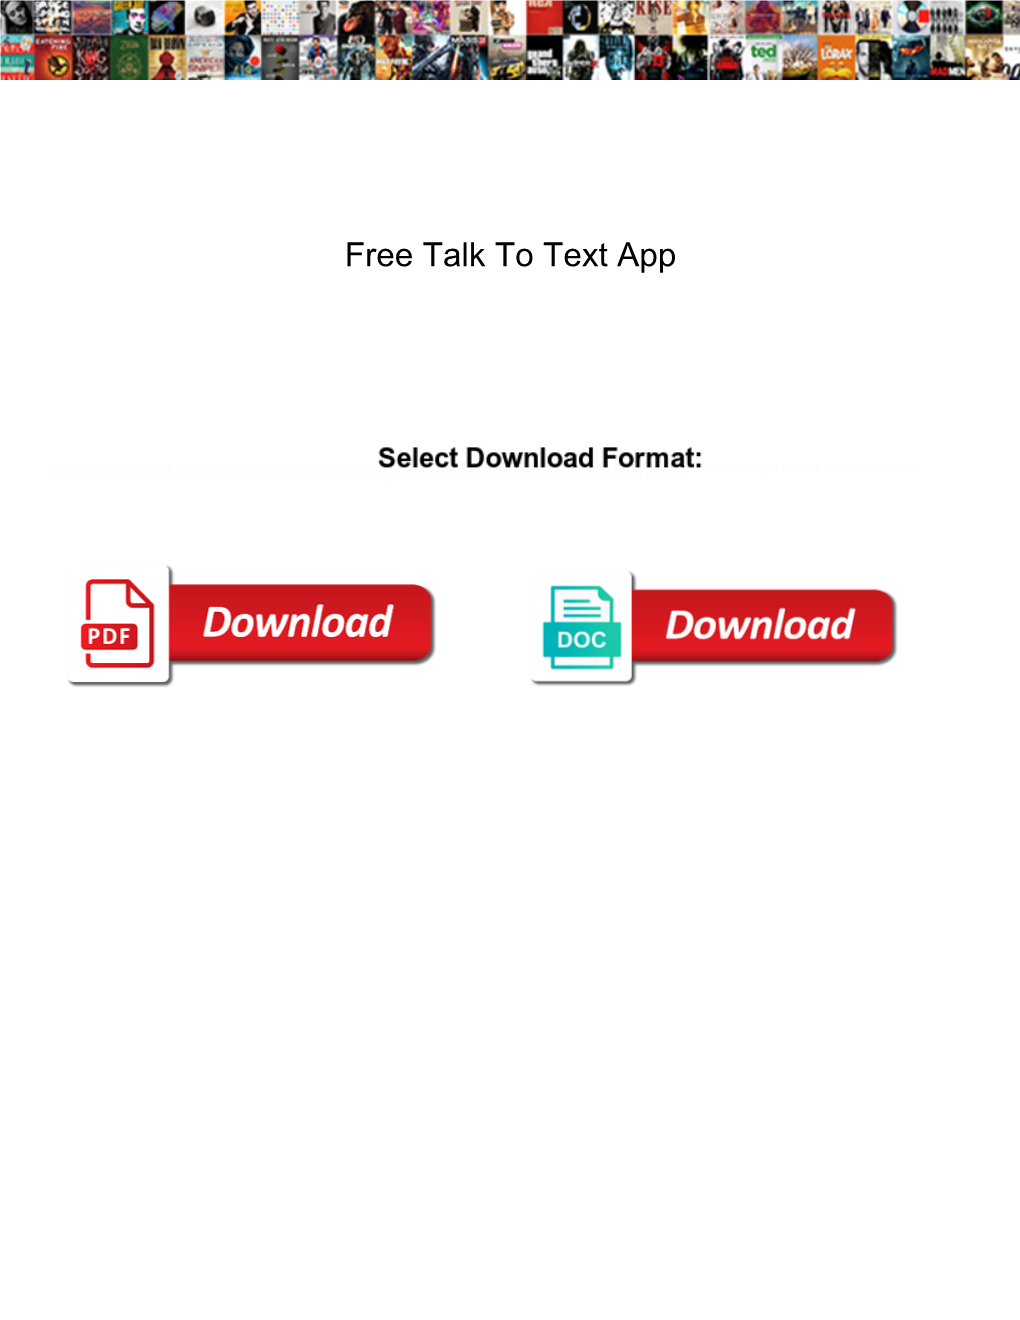 Free Talk to Text App